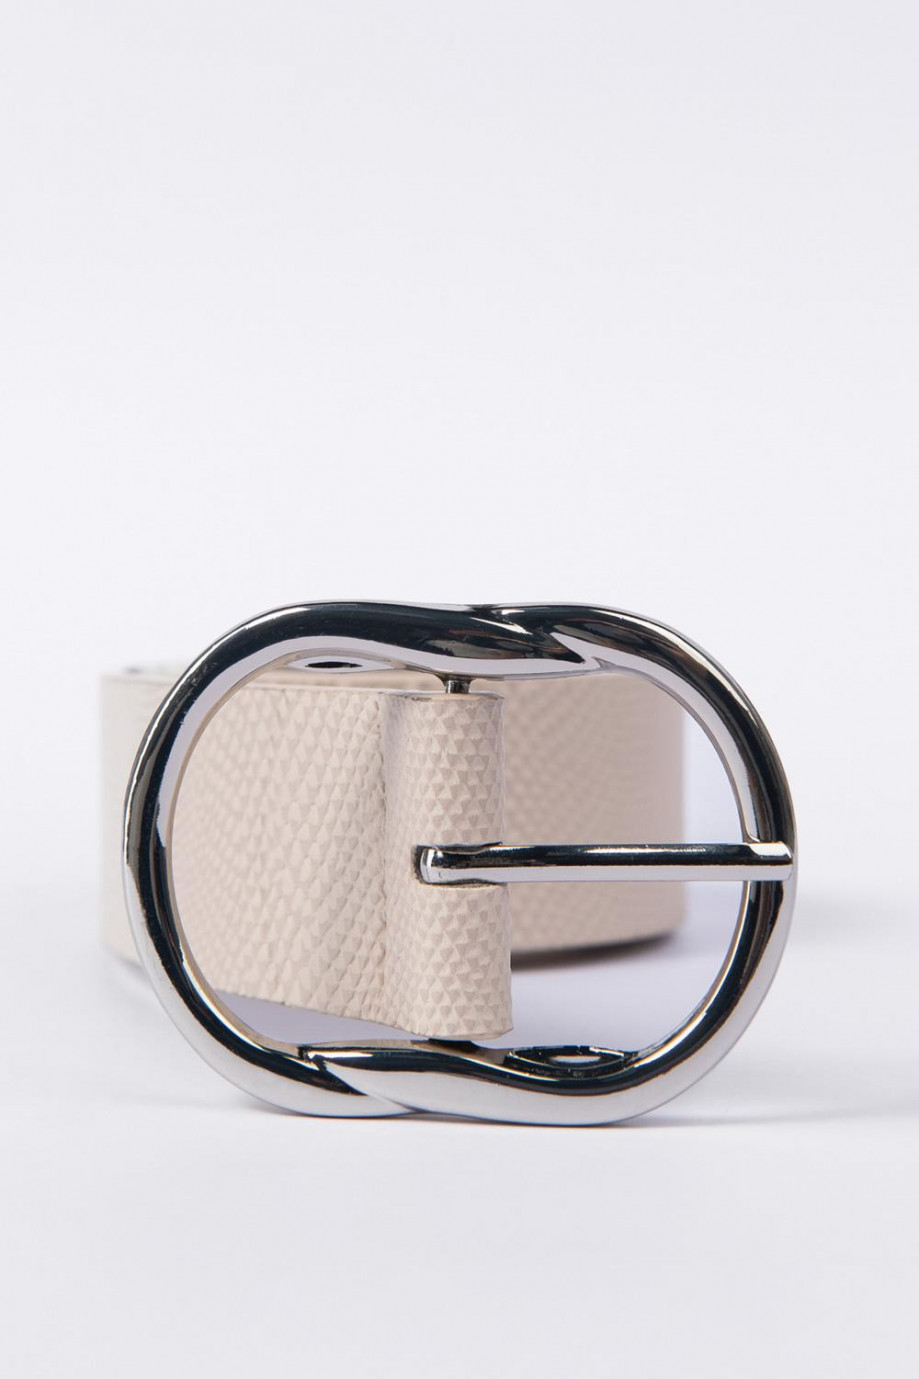 Cinturón crema claro con texturas y hebilla plateada metálica